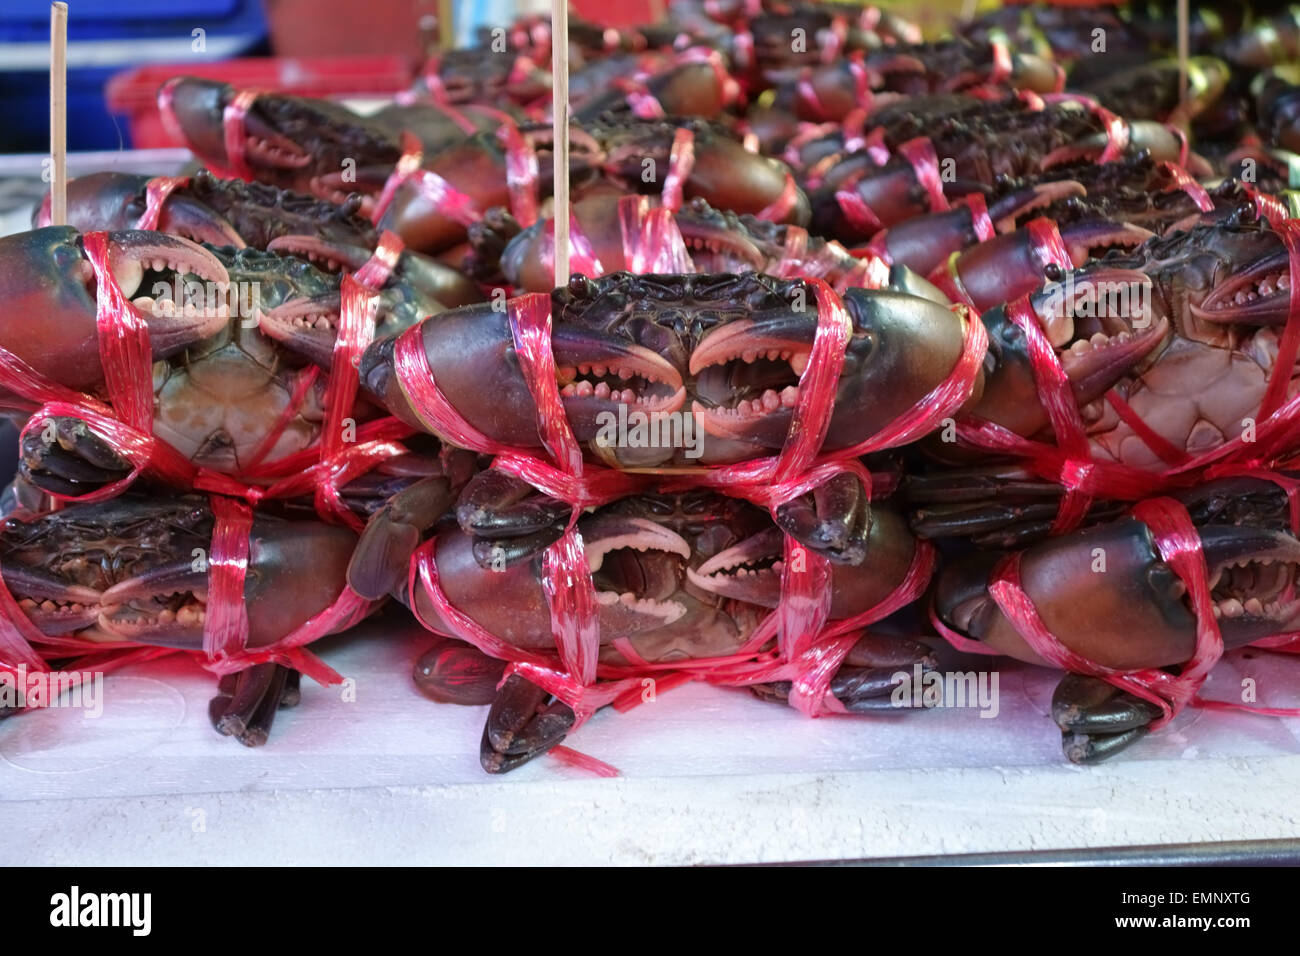 Los cangrejos vivos atados enlazados en un puesto en un mercado de alimentos en Bangkok, Tailandia Foto de stock